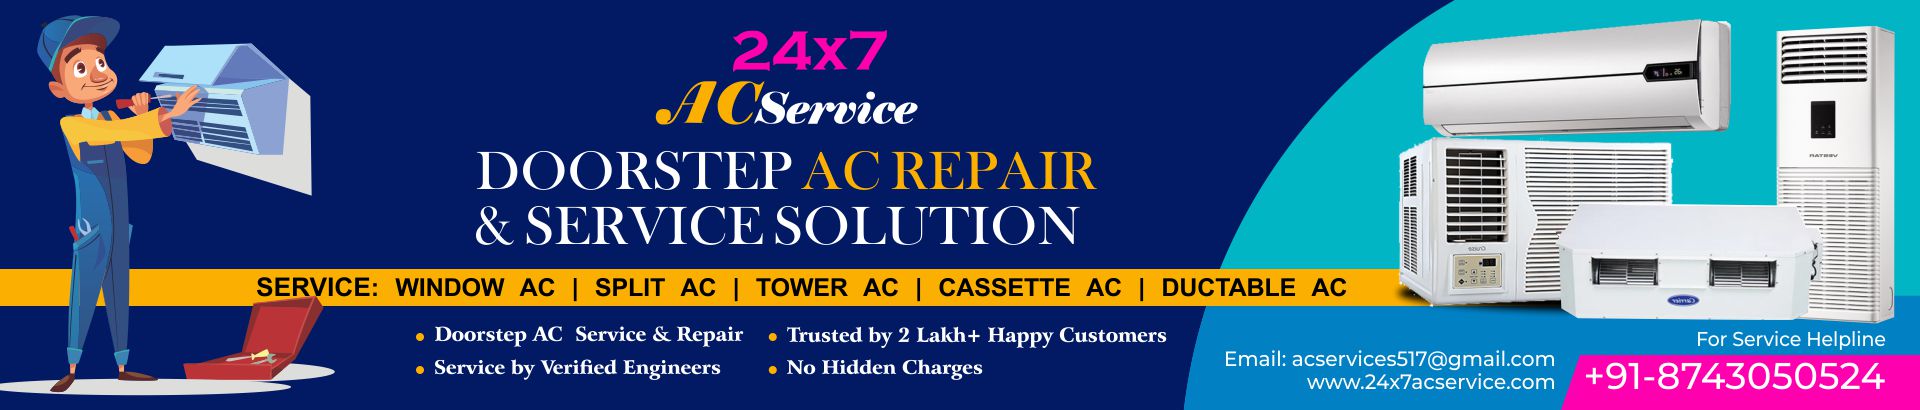 Ac Repair And Service In Preet Vihar Delhi